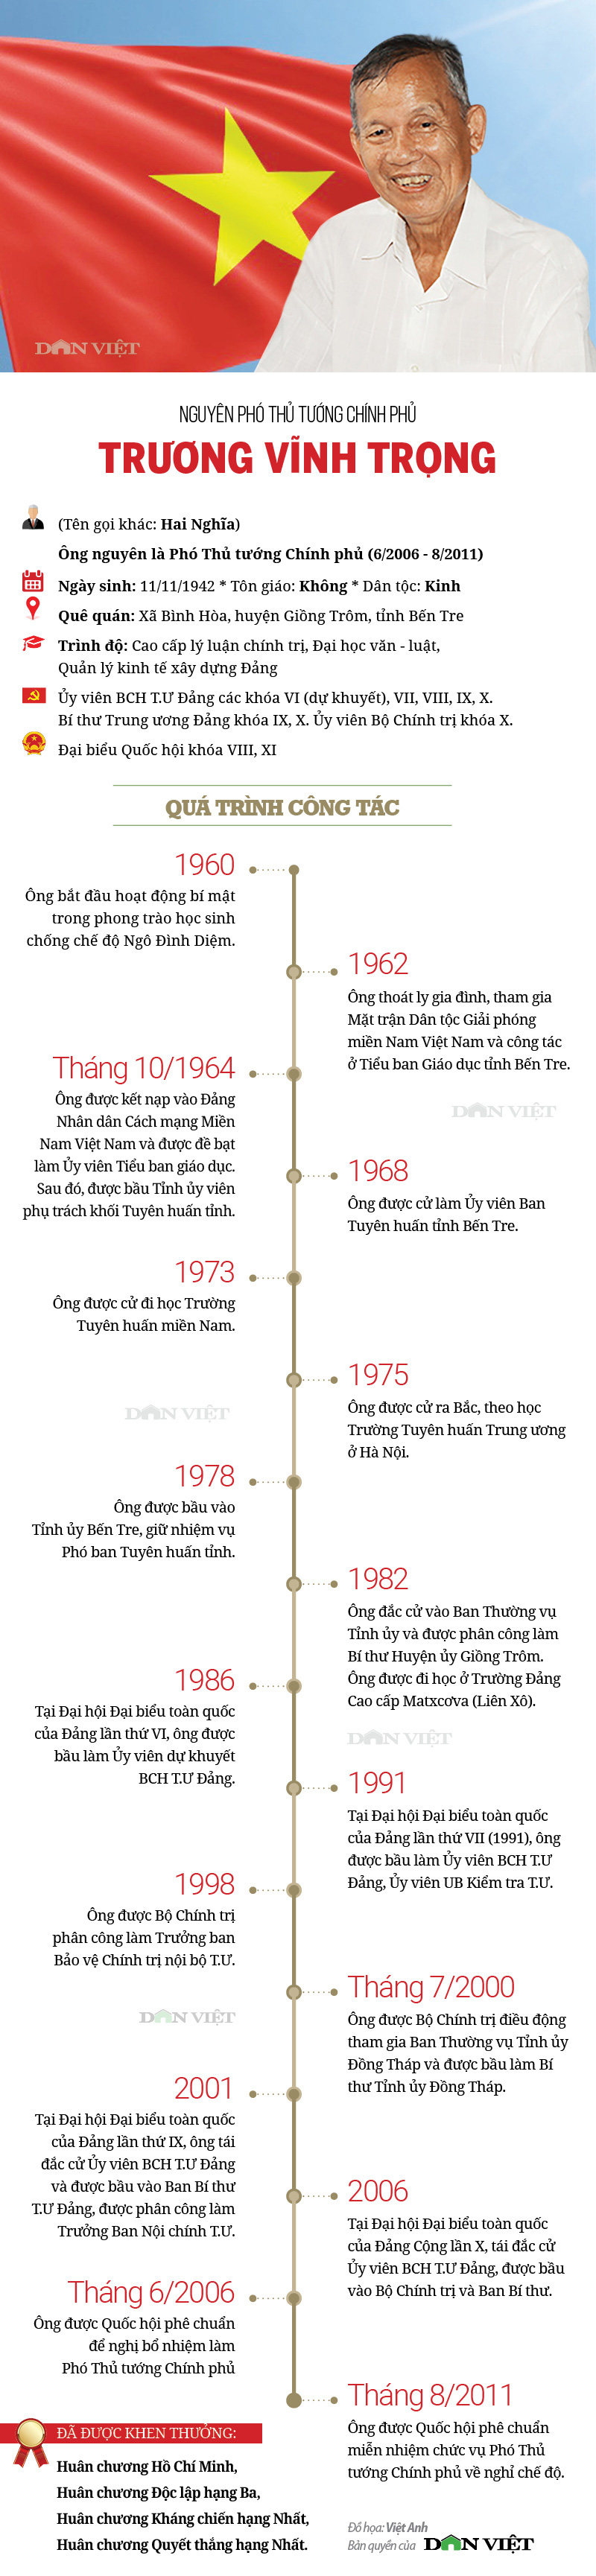 Infographic về sự nghiệp của nguyên Phó Thủ tướng Trương Vĩnh Trọng - Ảnh 1.